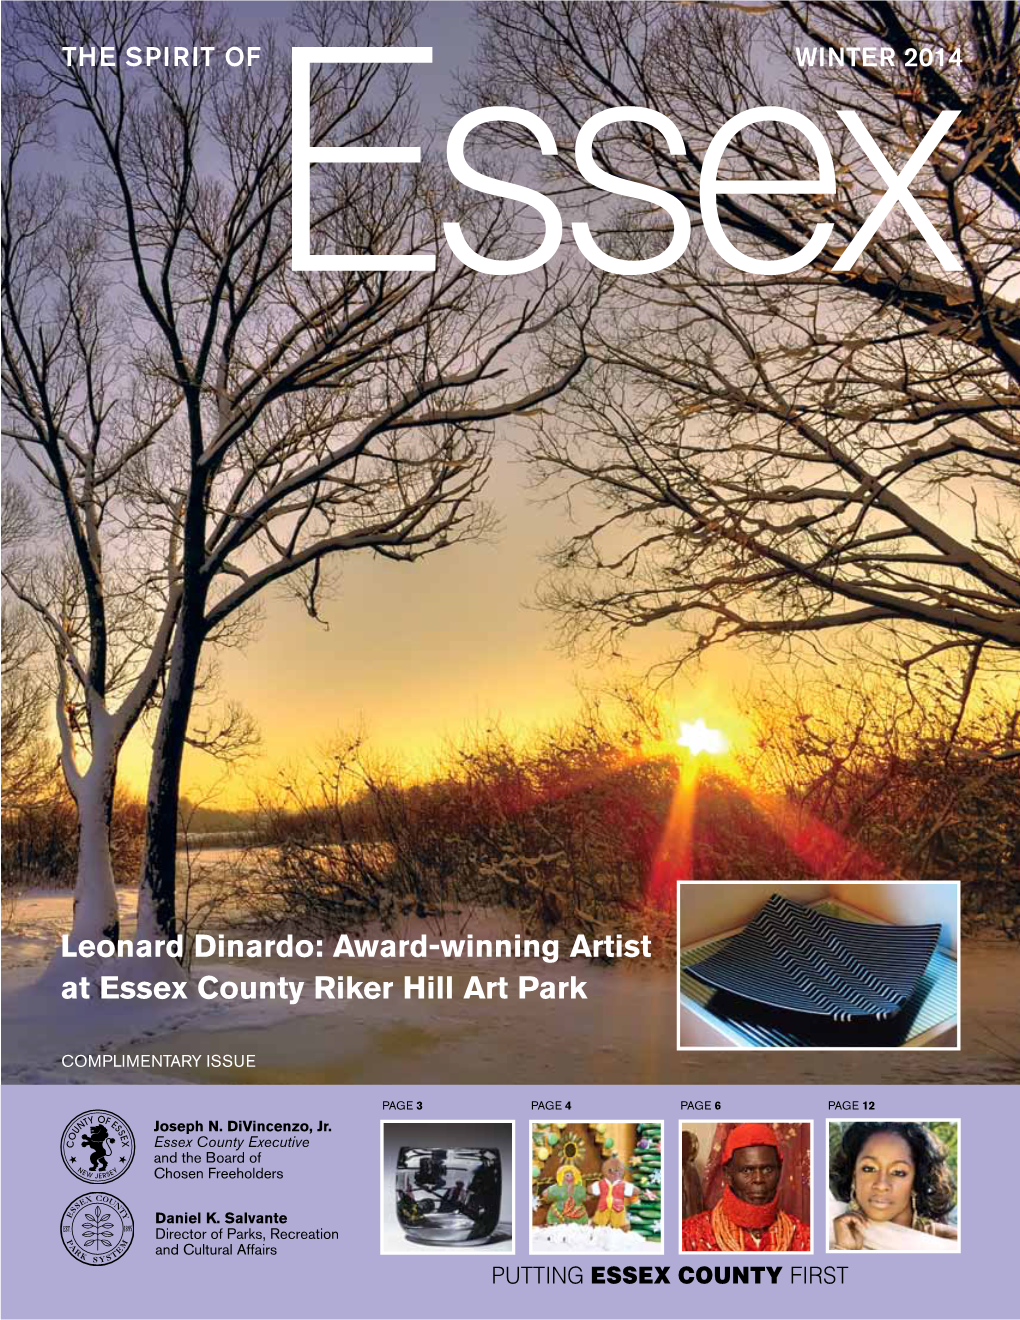 Leonard Dinardo: Award-Winning Artist at Essex County Riker Hill Art Park